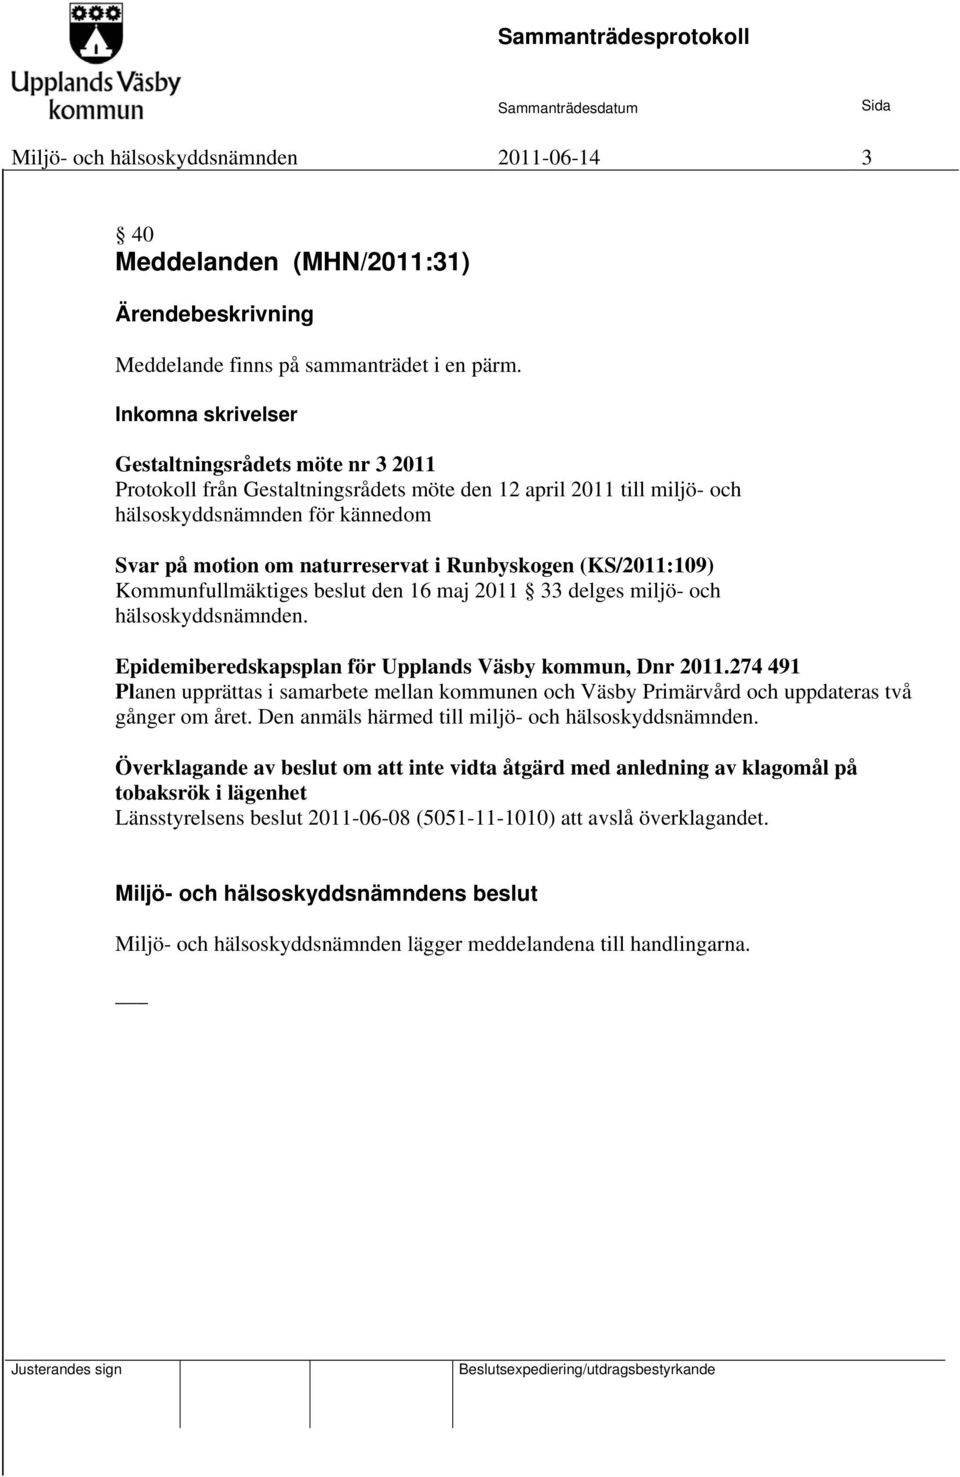 Runbyskogen (KS/2011:109) Kommunfullmäktiges beslut den 16 maj 2011 33 delges miljö- och hälsoskyddsnämnden. Epidemiberedskapsplan för Upplands Väsby kommun, Dnr 2011.